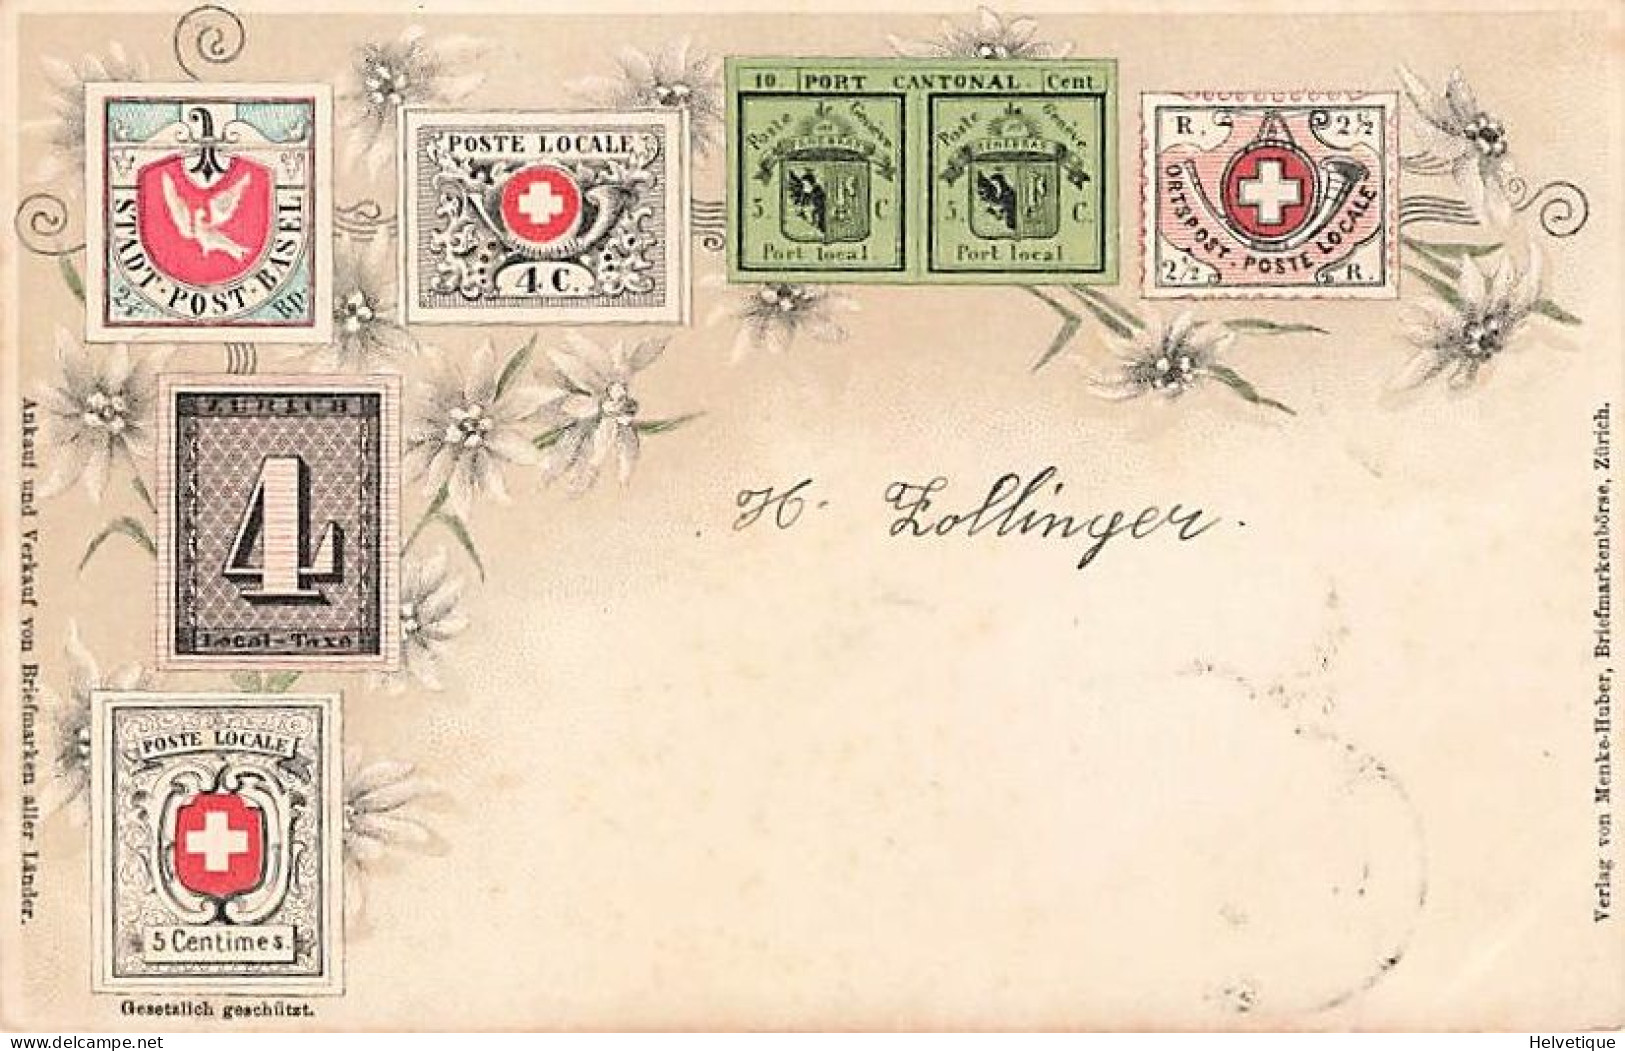 Timbres Poste Suisses Schweizer Briefmarken 1900 Basel Genève Poste Locale Otspost Schweiz Suisse - Briefmarken (Abbildungen)